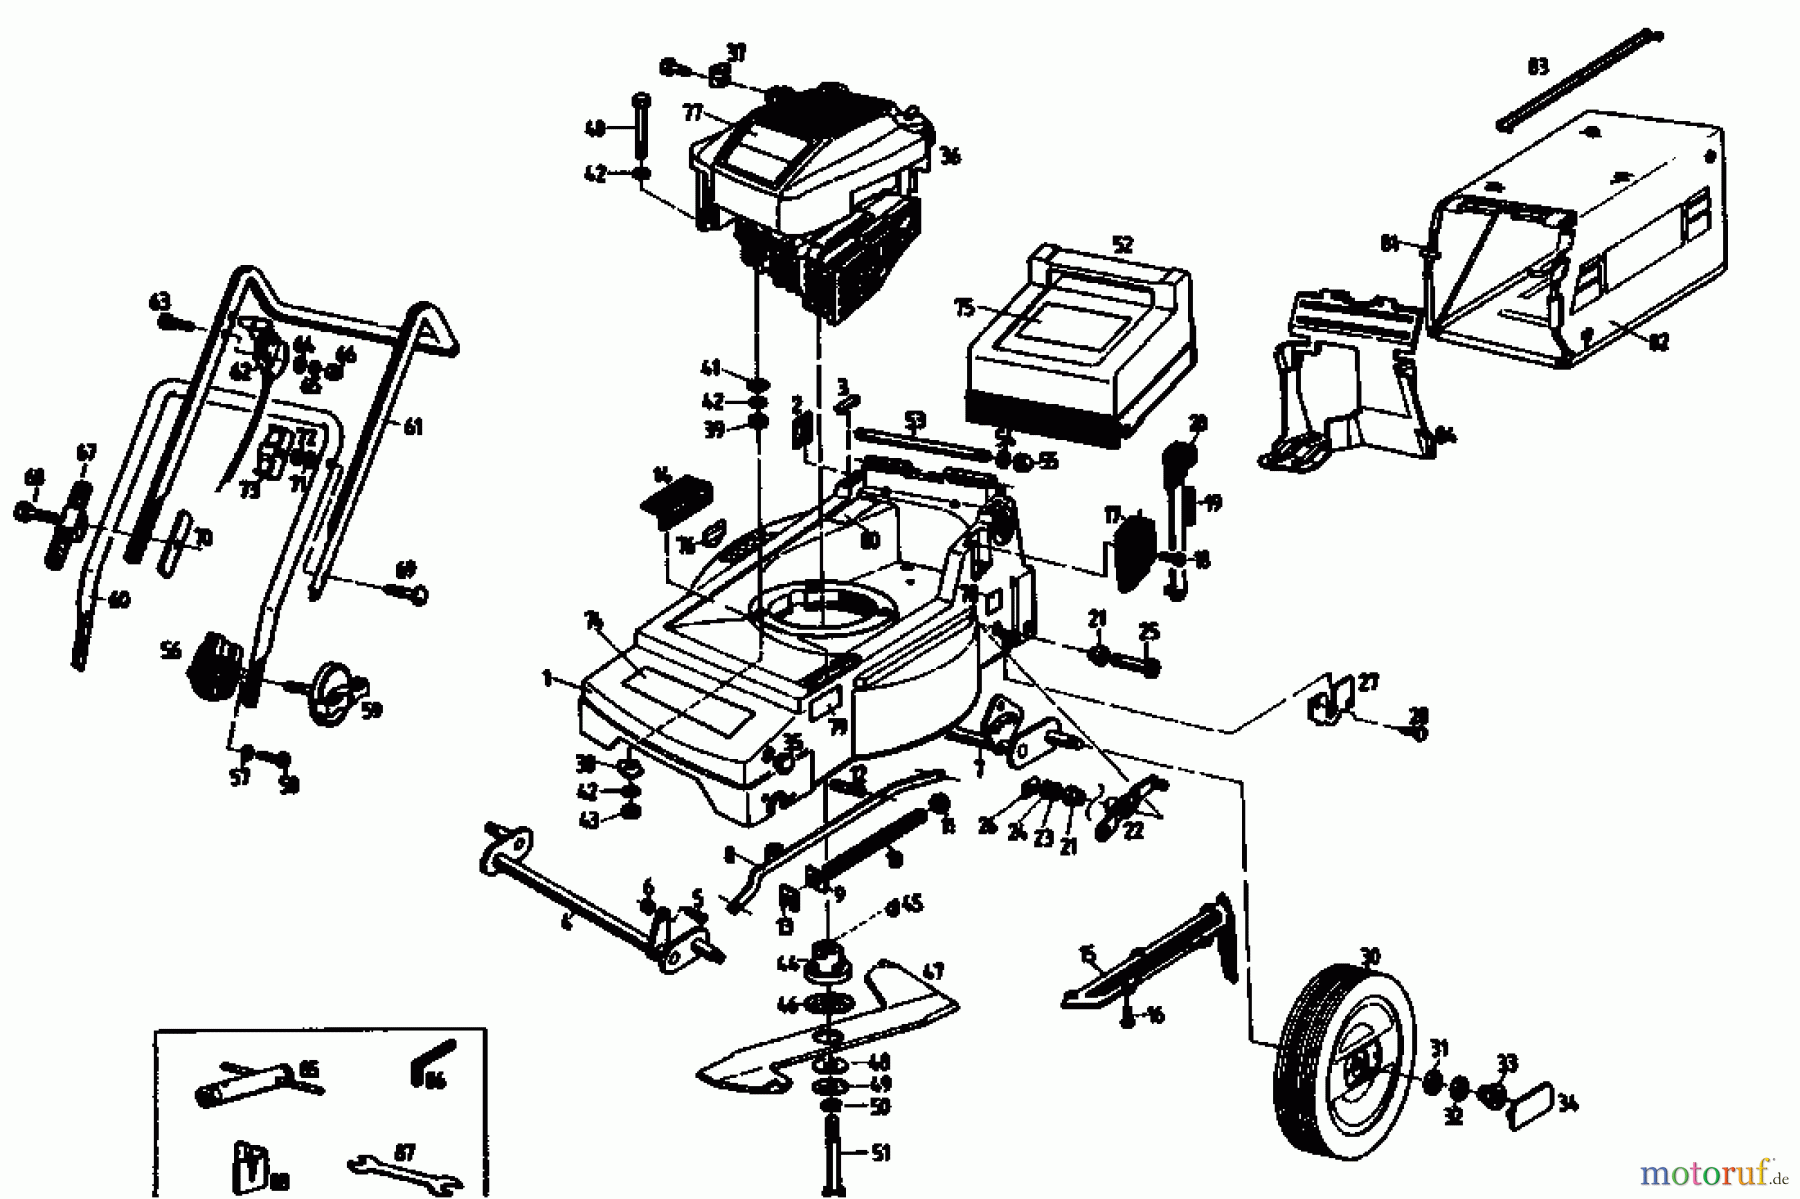  Gutbrod Tondeuse thermique MH 404 04018.01  (1992) Machine de base